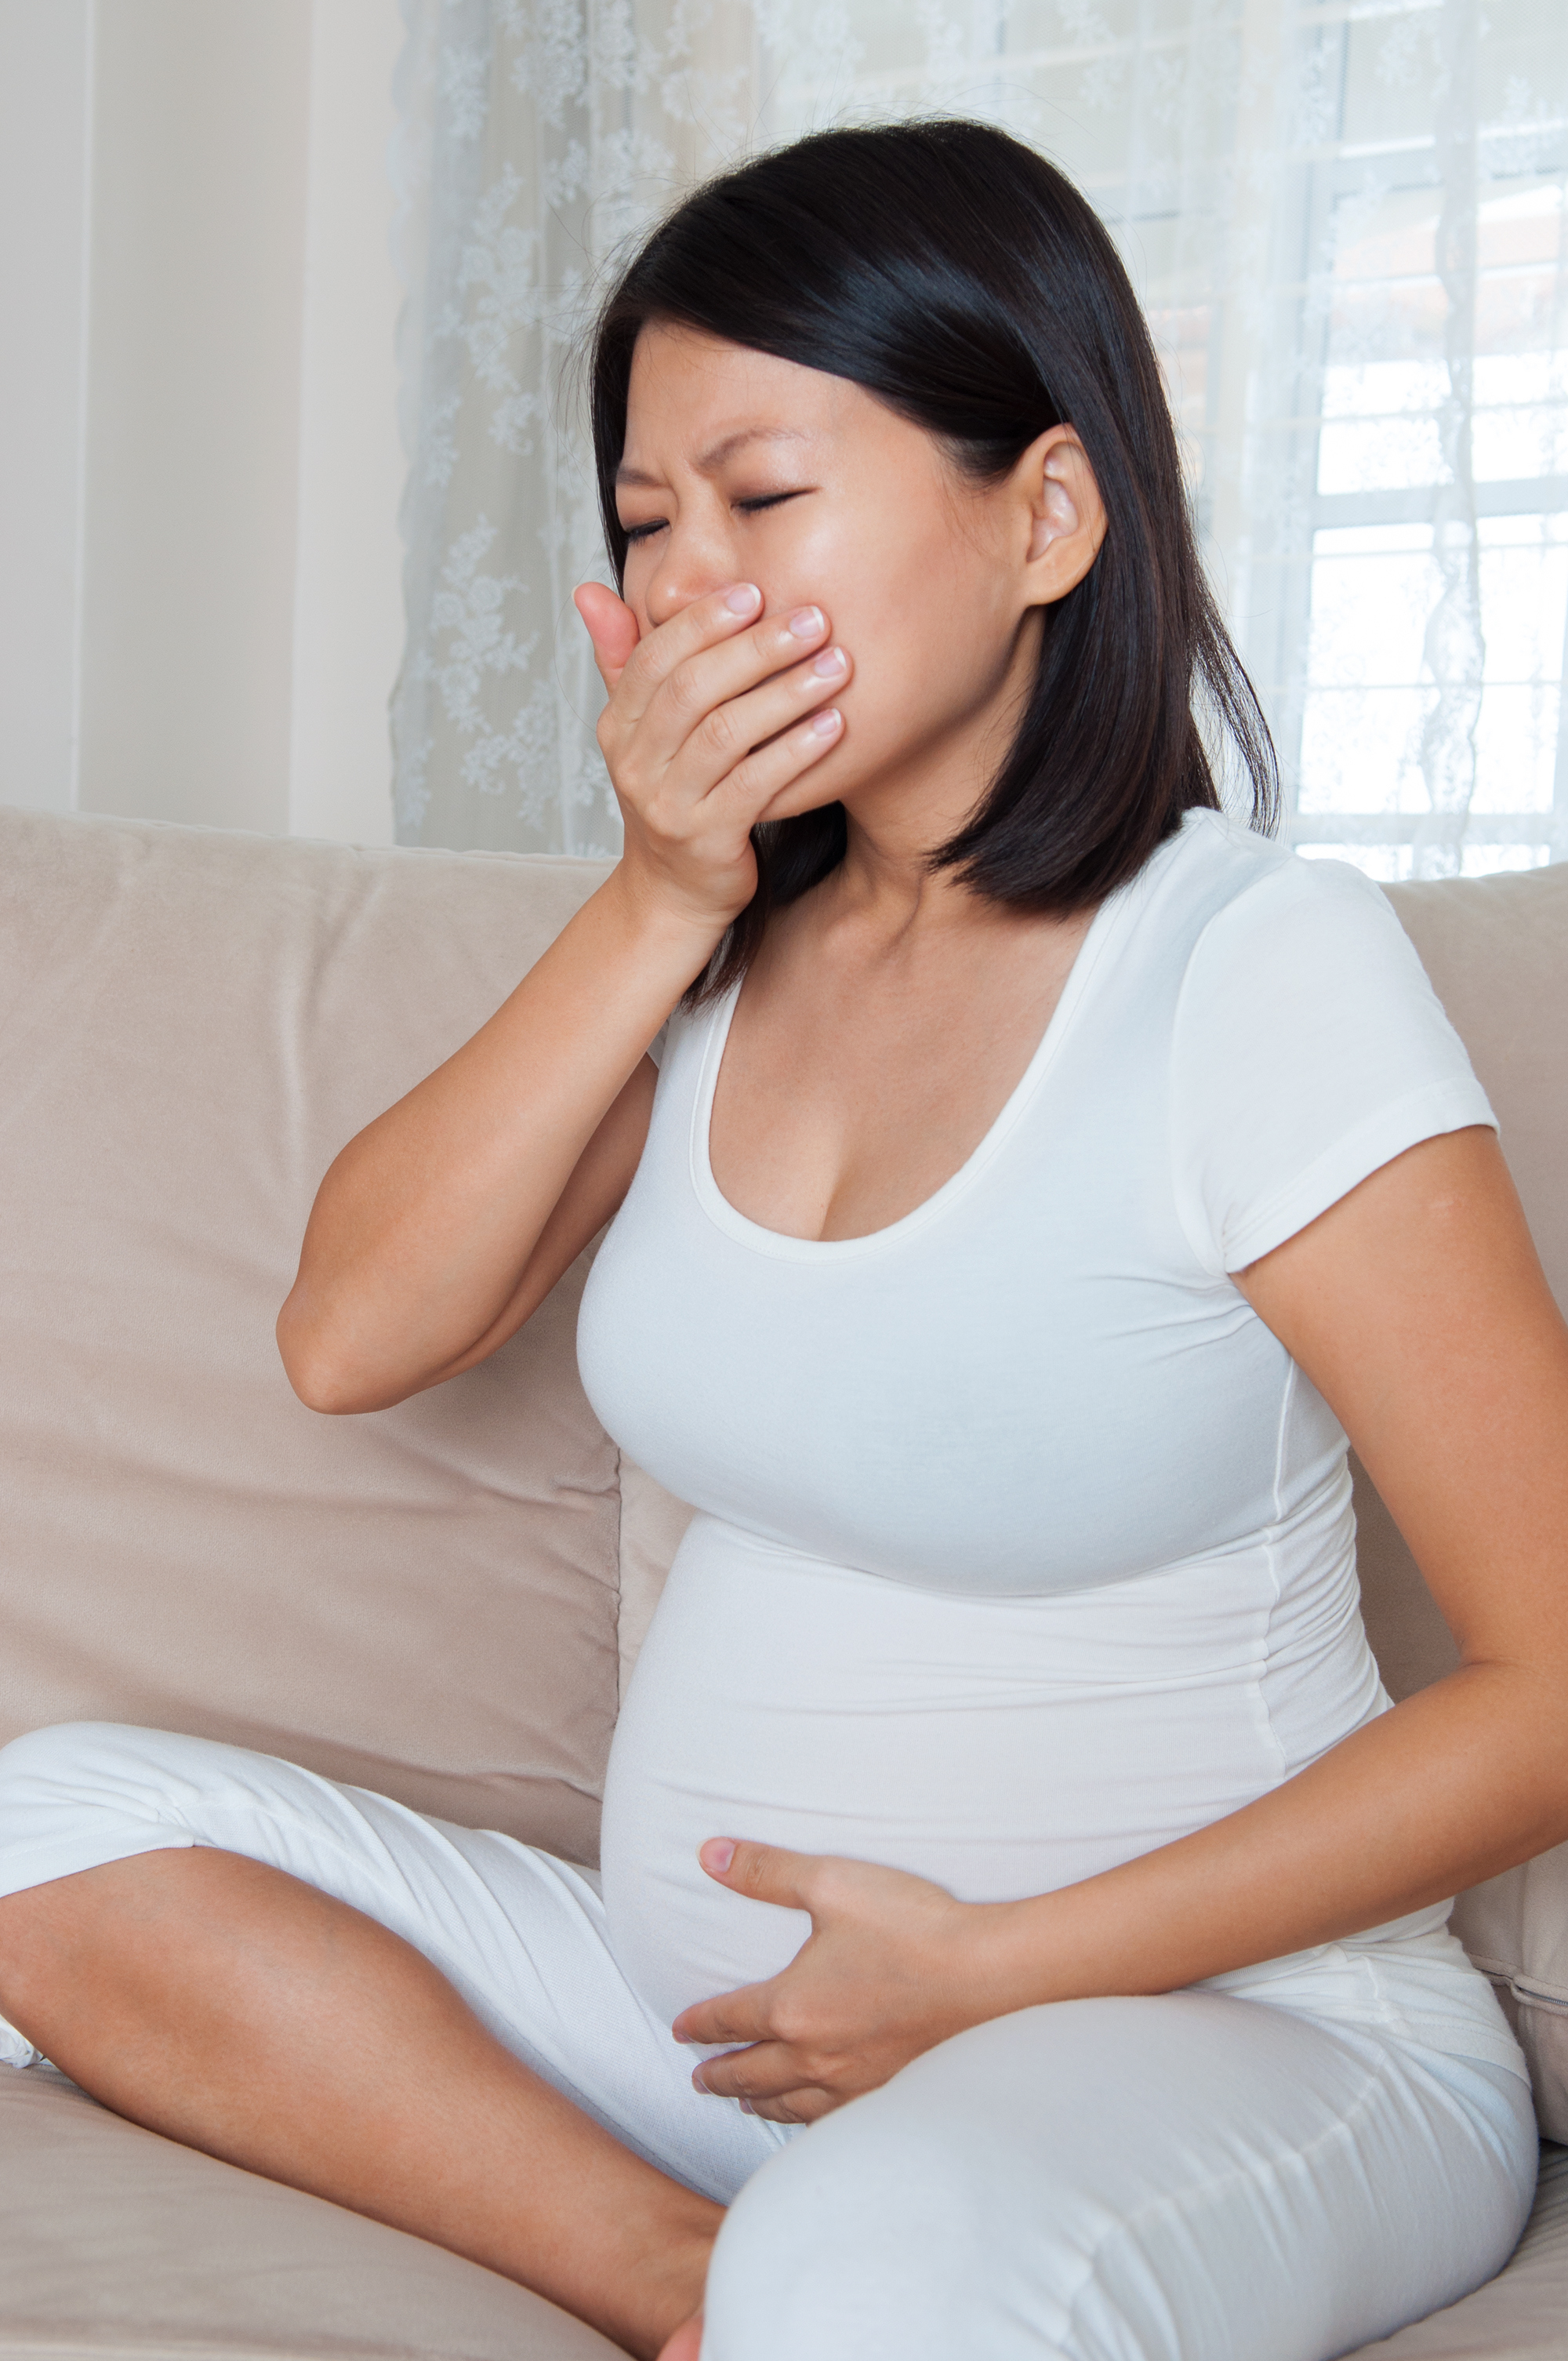 Une adolescente enceinte qui retient ses larmes | Source : Getty Images